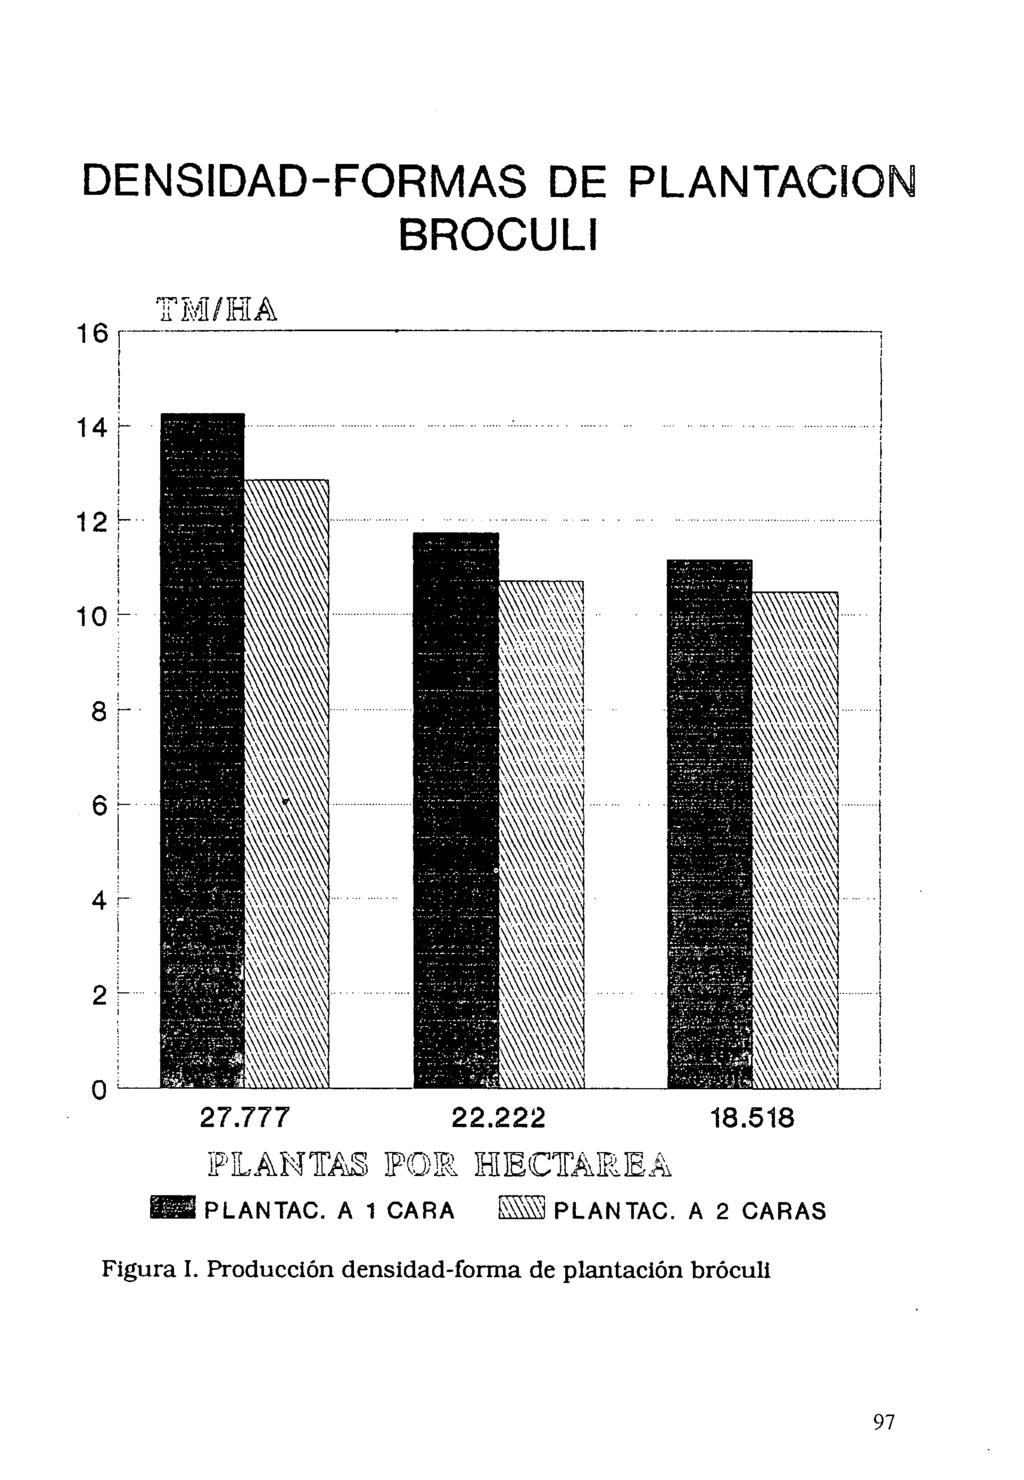 DENSIDAD-FORMAS DE PLANTACION BROCULI "PLANTASIPO151 HECTAREA EZ PLANTAC.